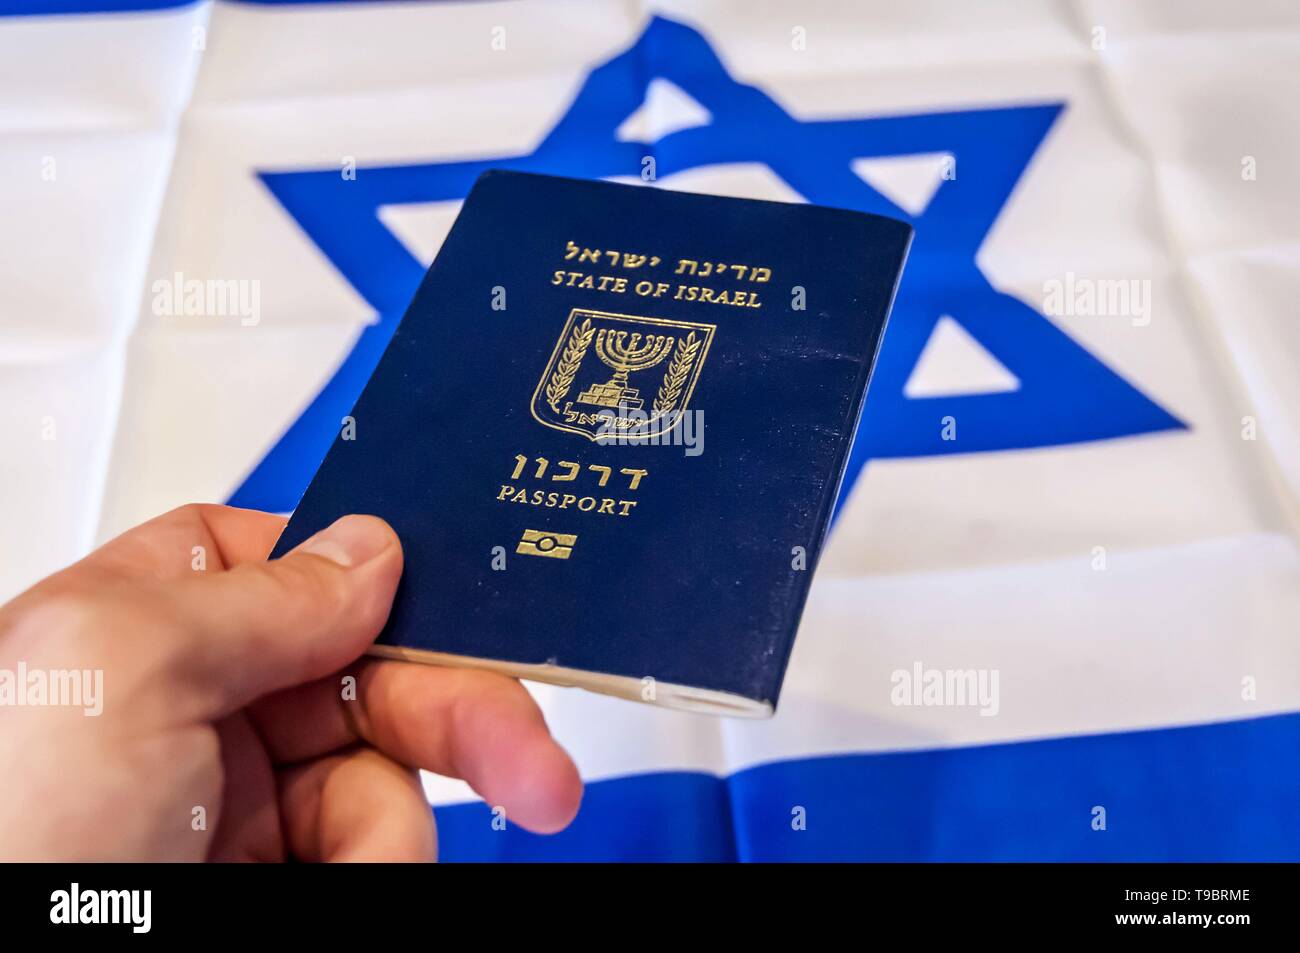 Mano sujetando el pasaporte del Estado de Israel, la bandera israelí en el fondo. El concepto de ciudadanía de Israel, Israel "pasaporte biométrico arkon' Foto de stock